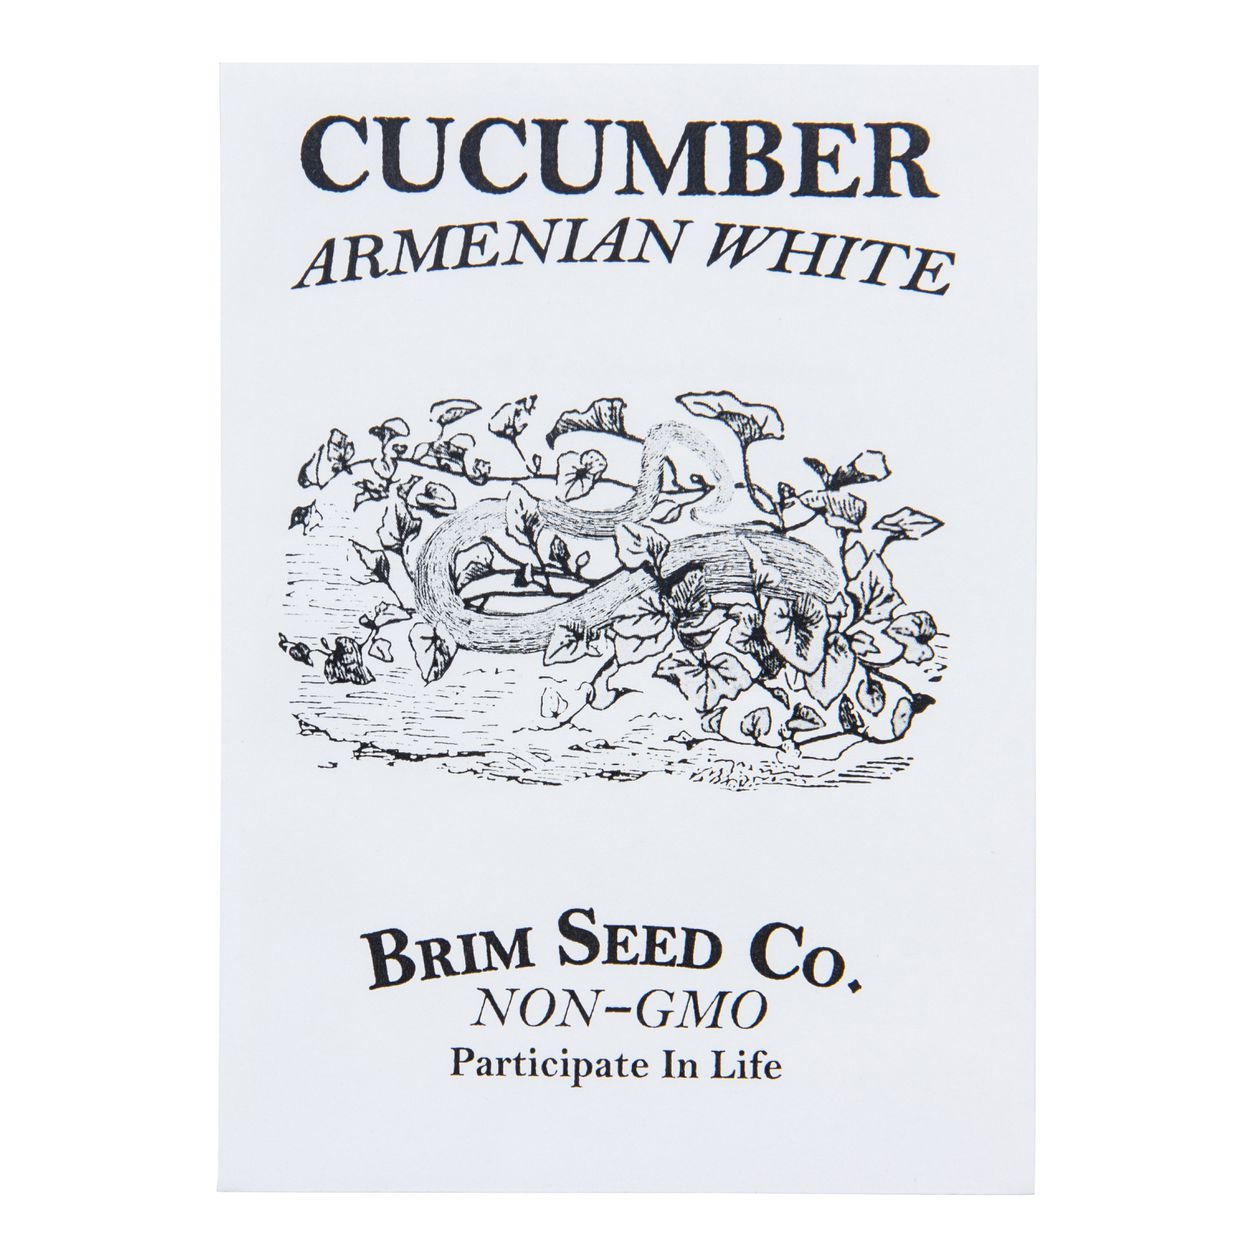 Brim Seed Co. - Armenian White Cucumber Seed